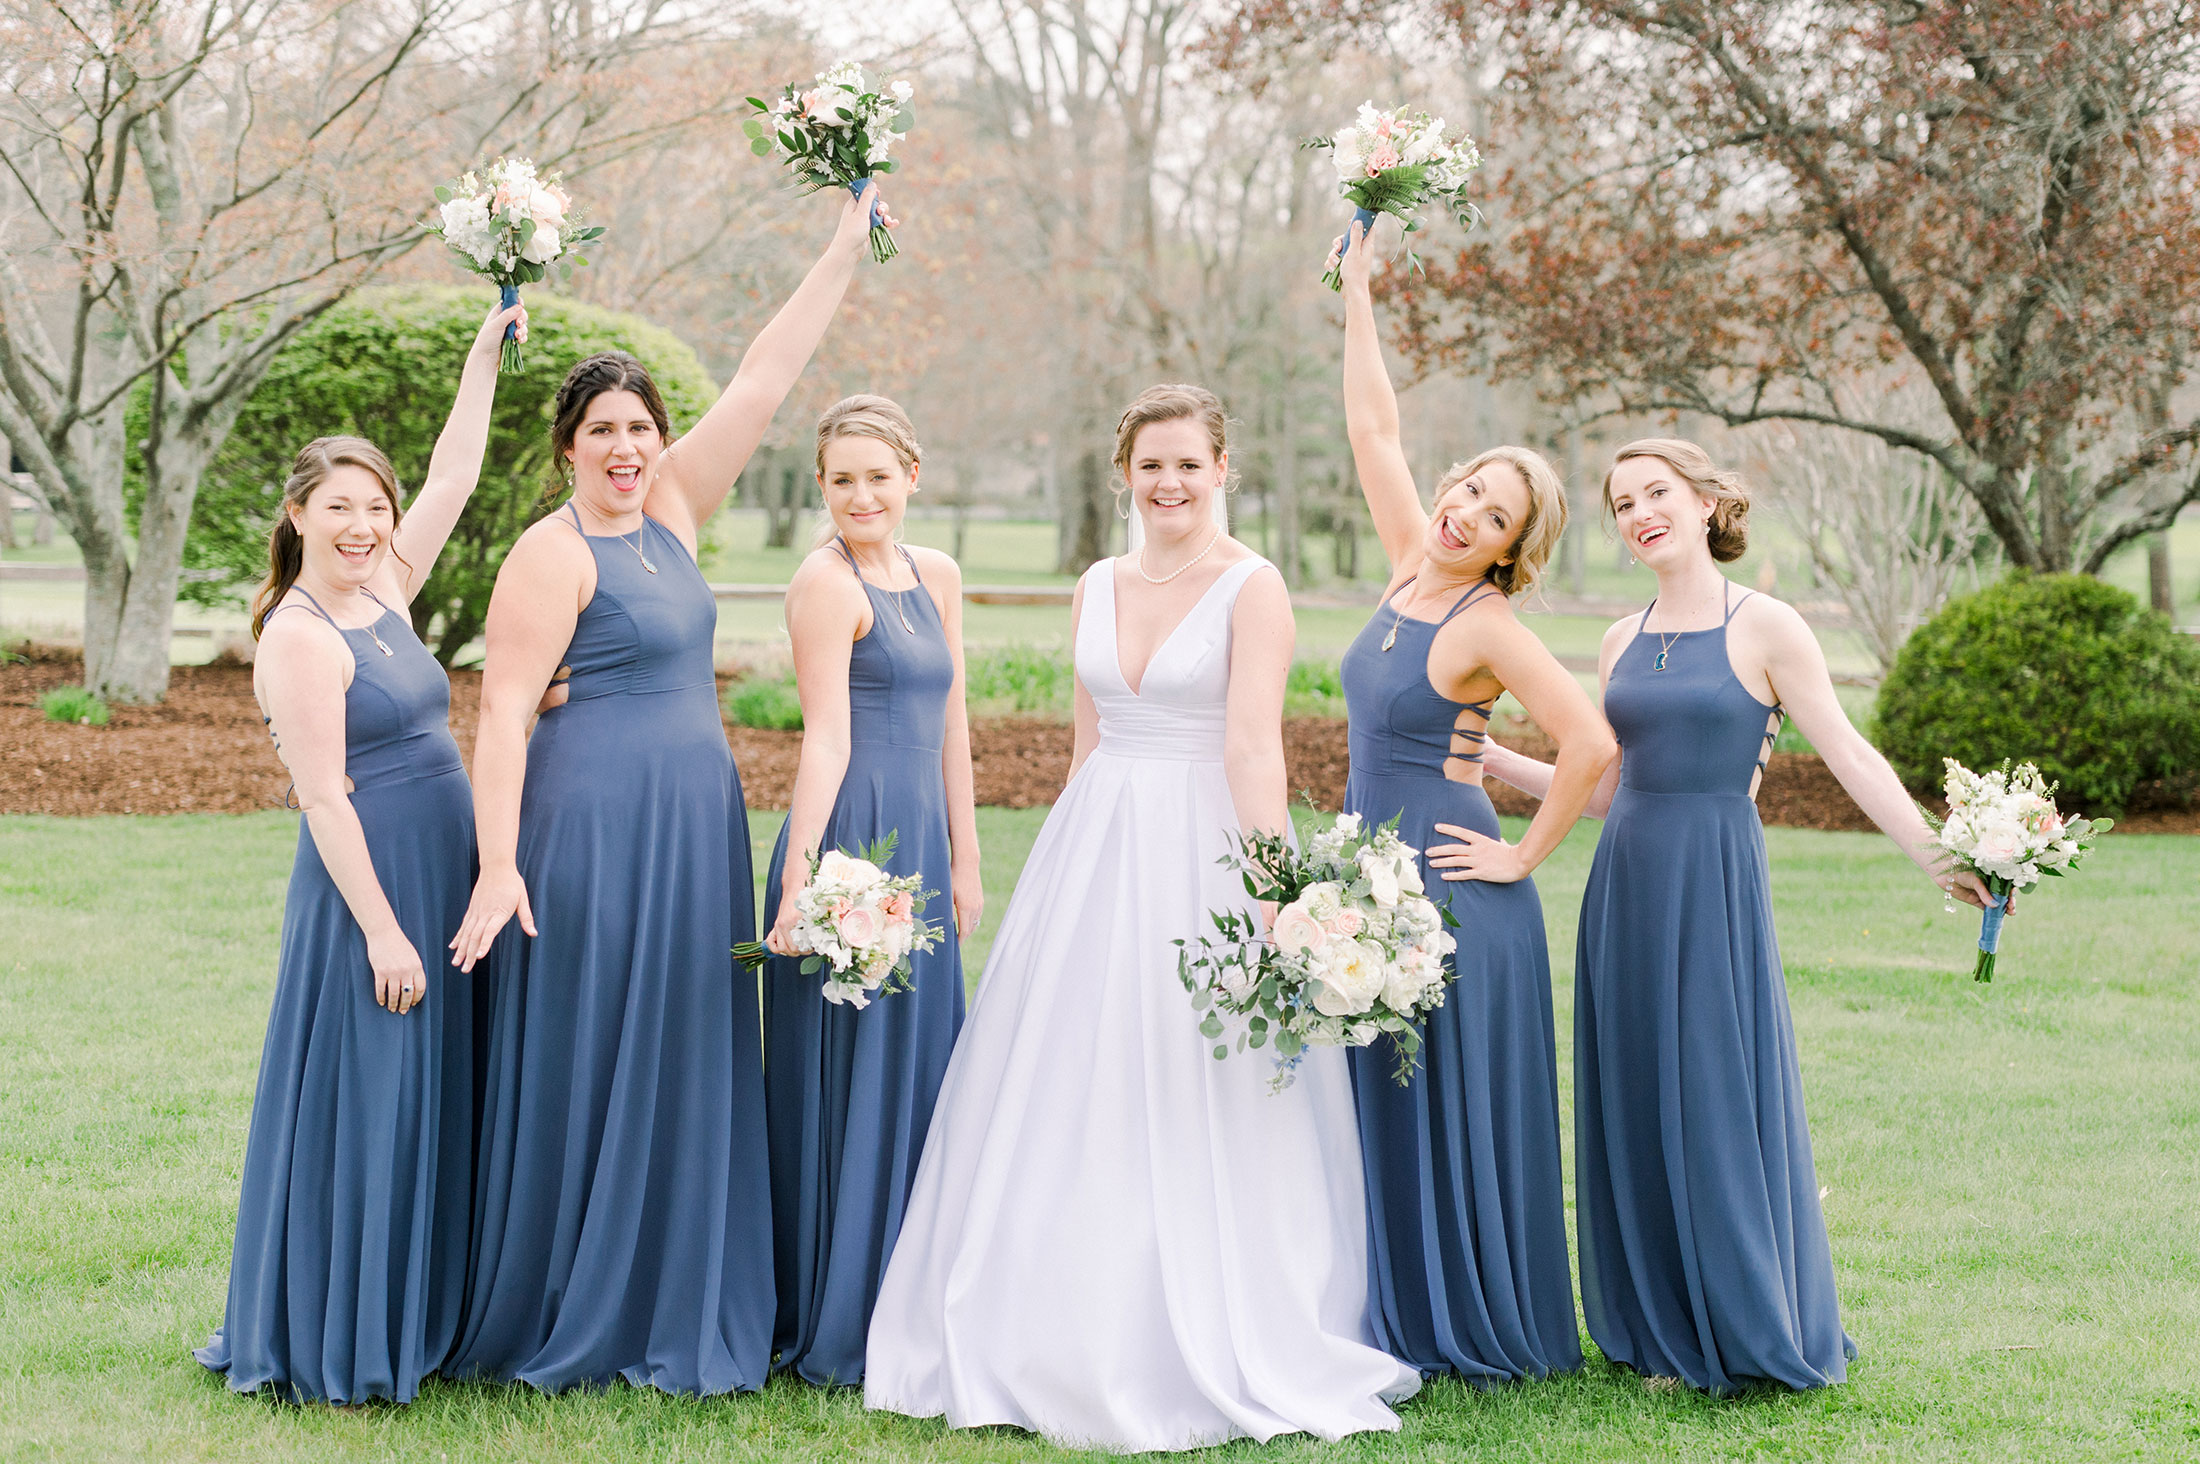 Bridesmaids dresses in classic blue